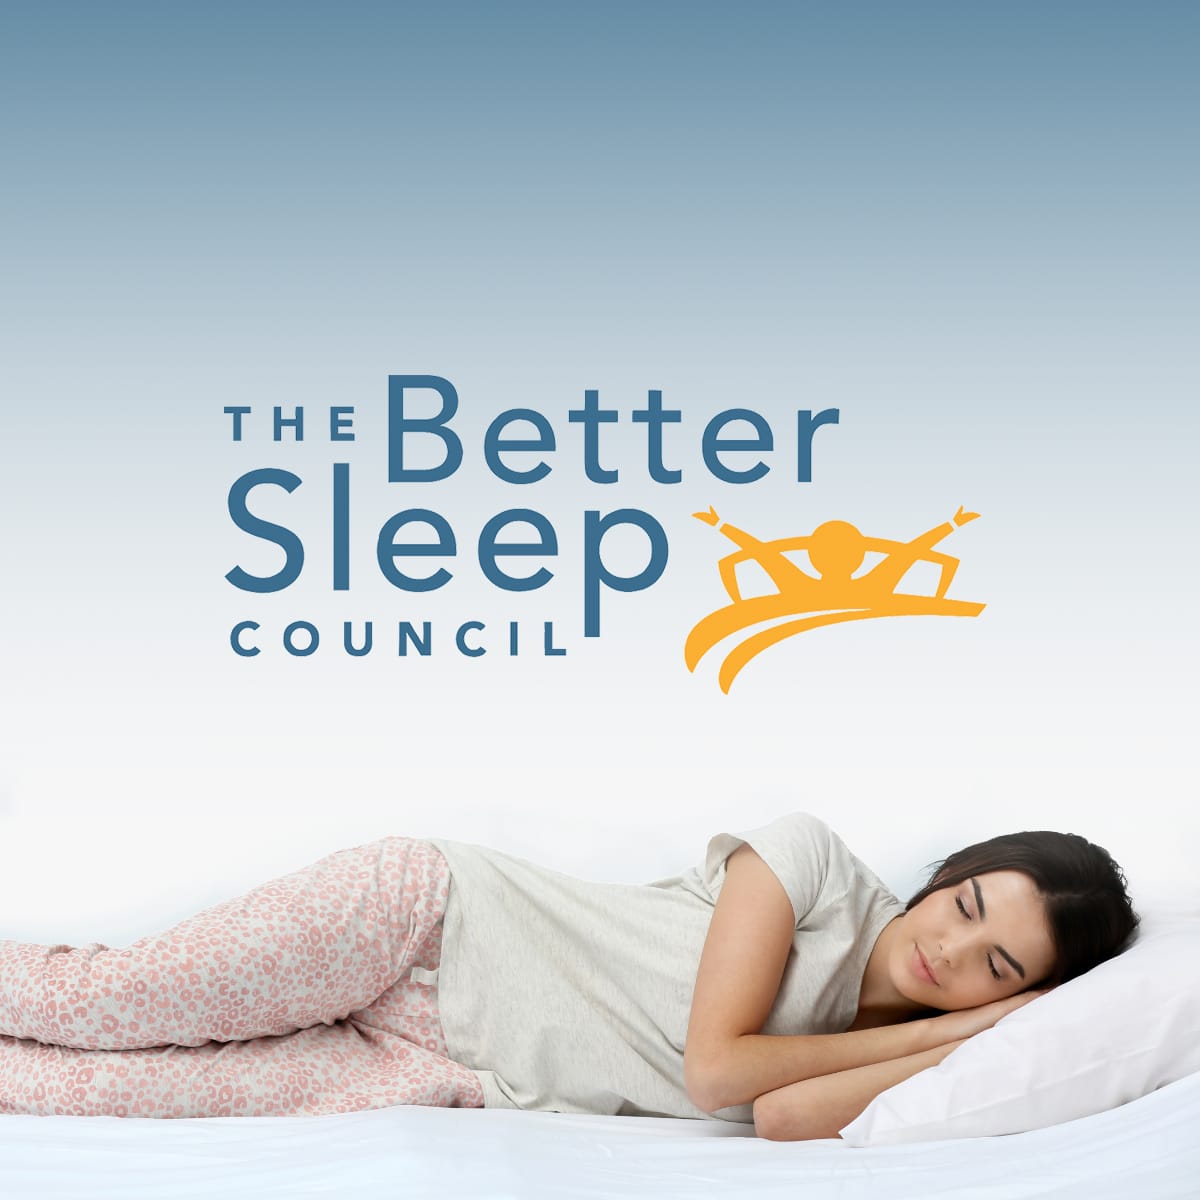 https://bettersleep.org/wp-content/uploads/2018/11/Better-Sleep-Council-Featured-Image.jpg